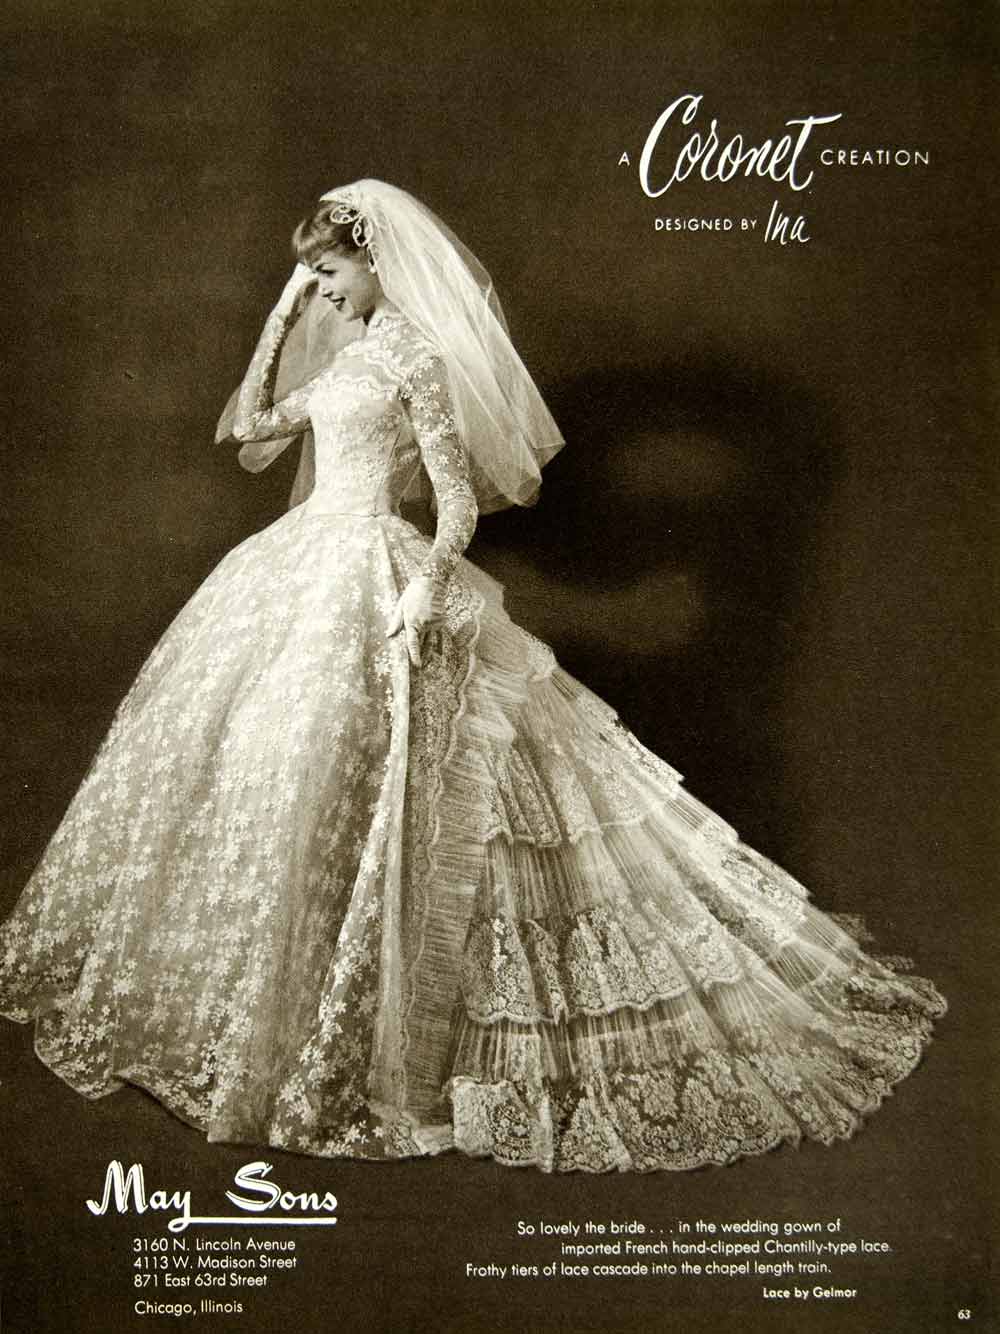 1956 Ad Coronet Ina Wedding Dress Gown Bride Bridal Veil Fashion Lace YBSM2